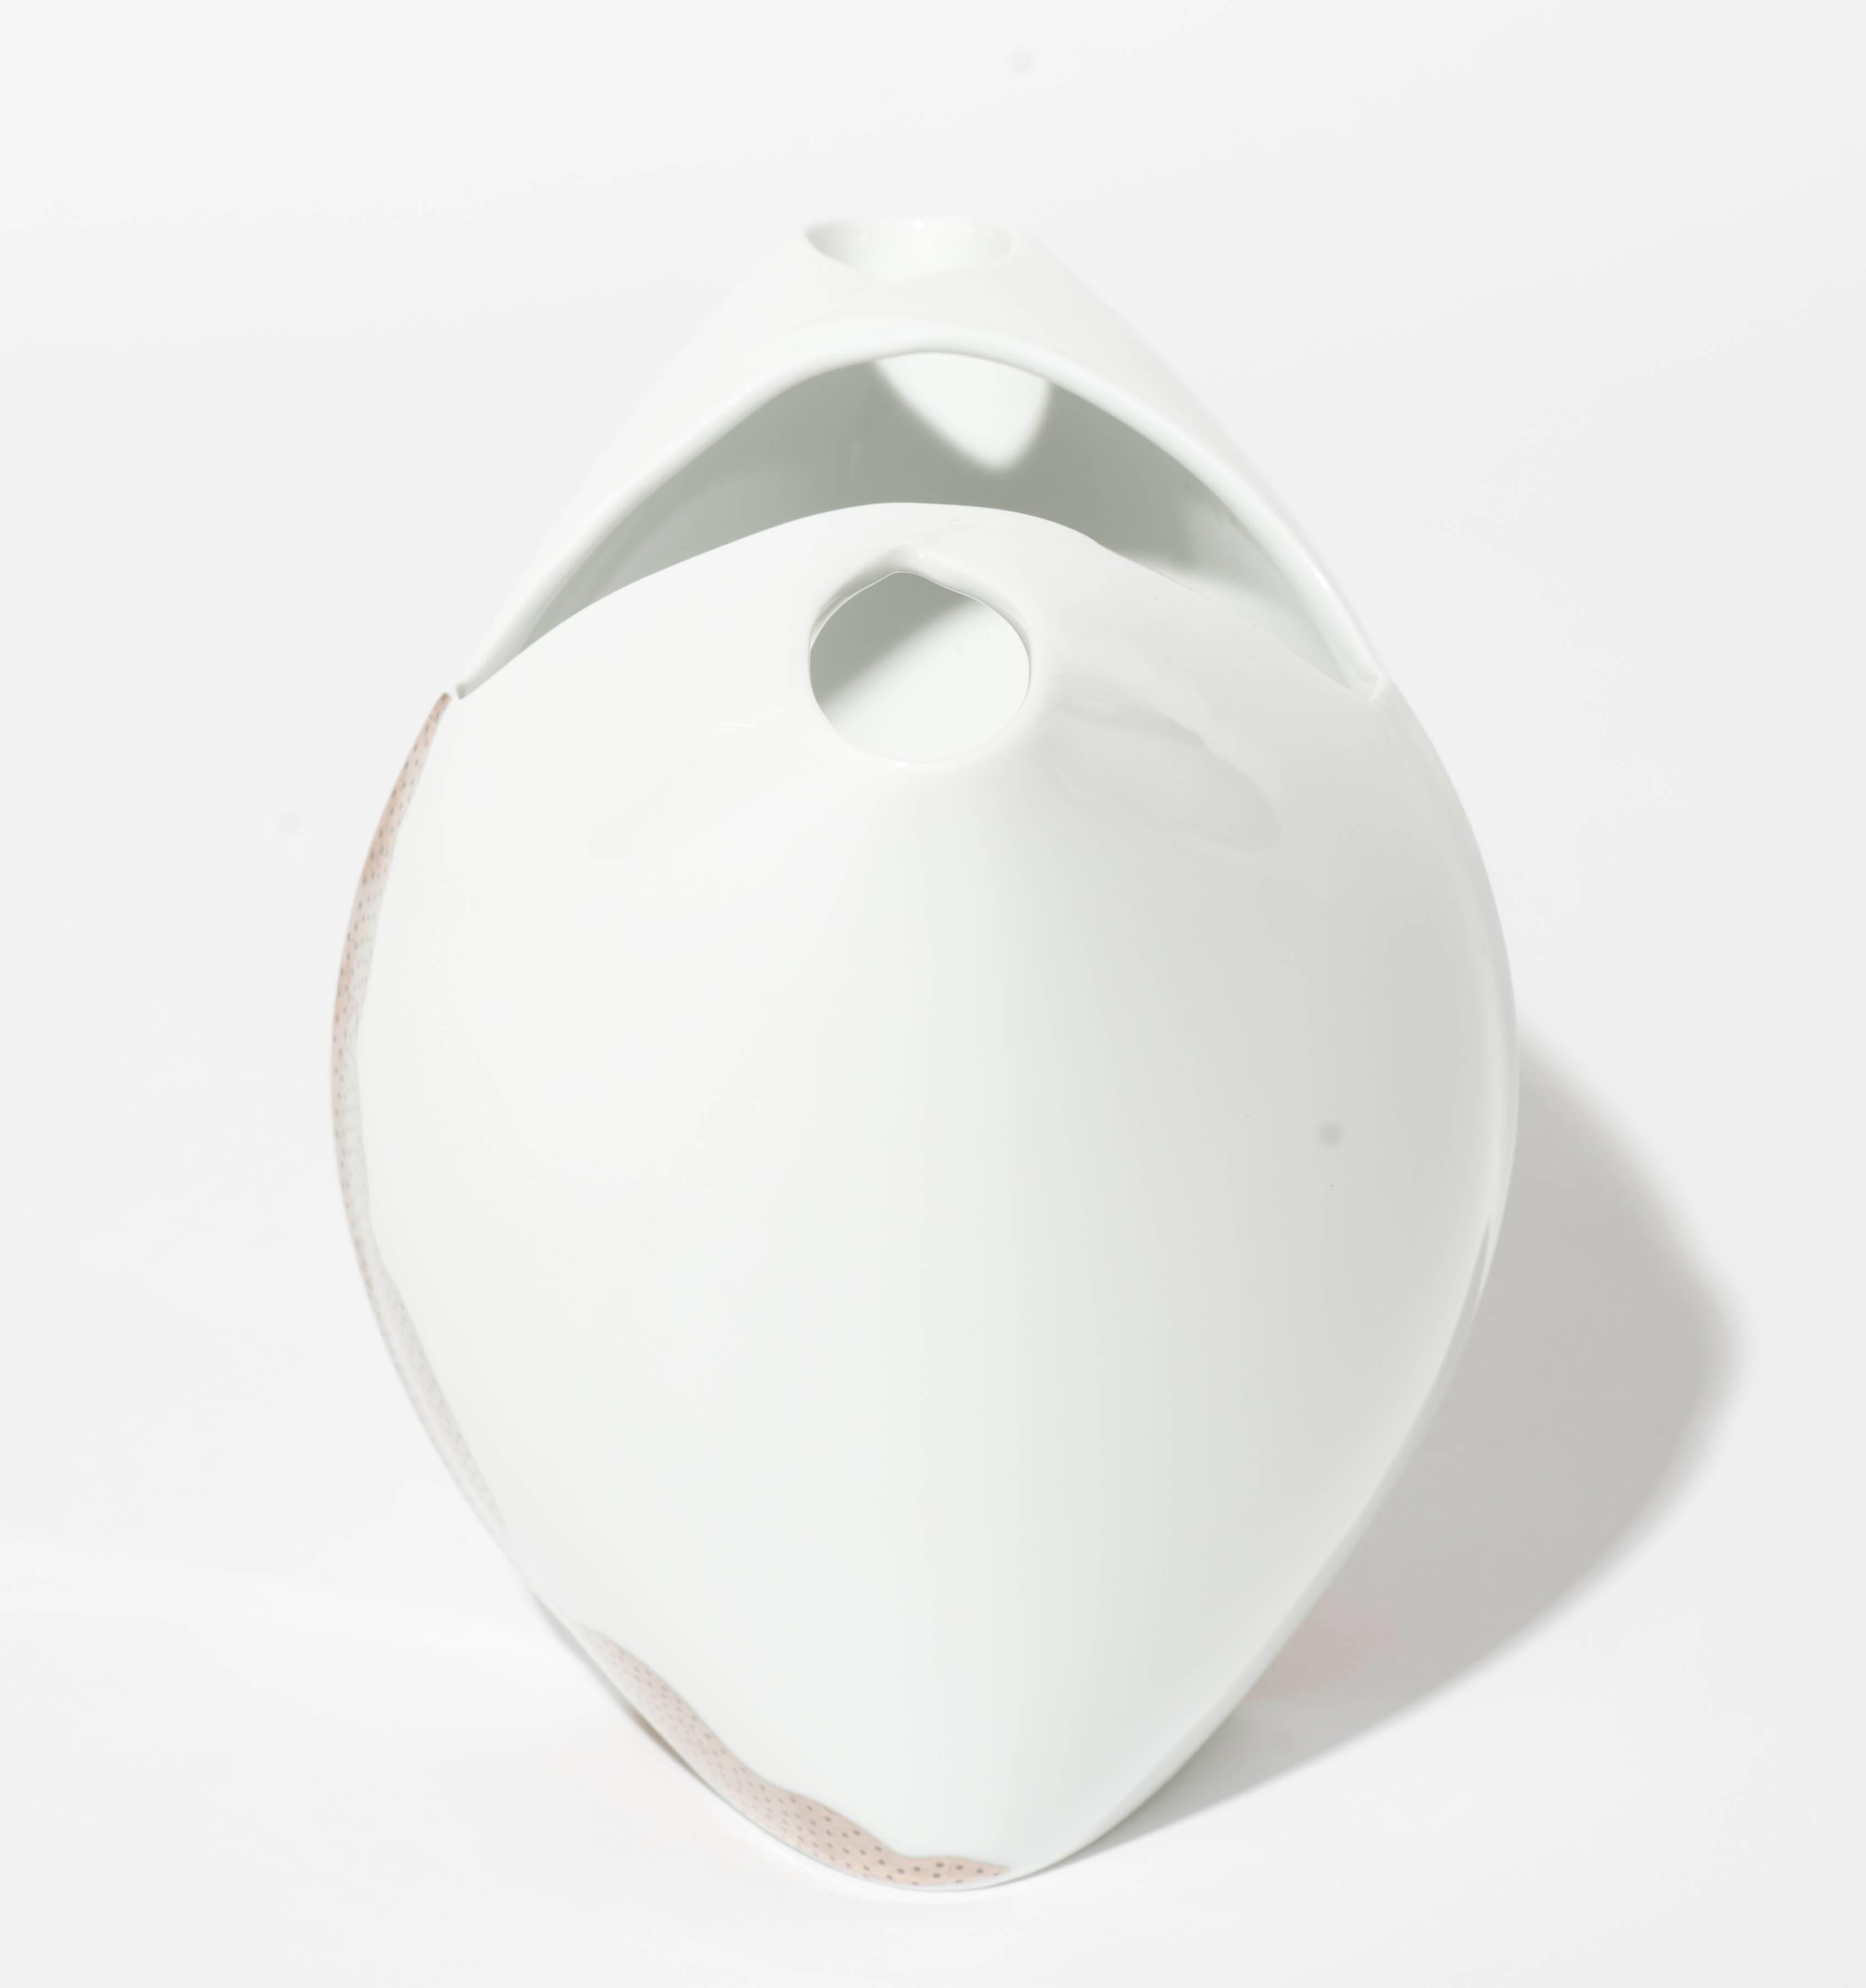 Il s'agit du plus petit modèle de la série de vases Tusca, conçue par Lino Sabattini et produite par Rosenthal dans les années 1980. Le vase en porcelaine blanche présente un motif de couleur argentée et est en très bon état vintage.